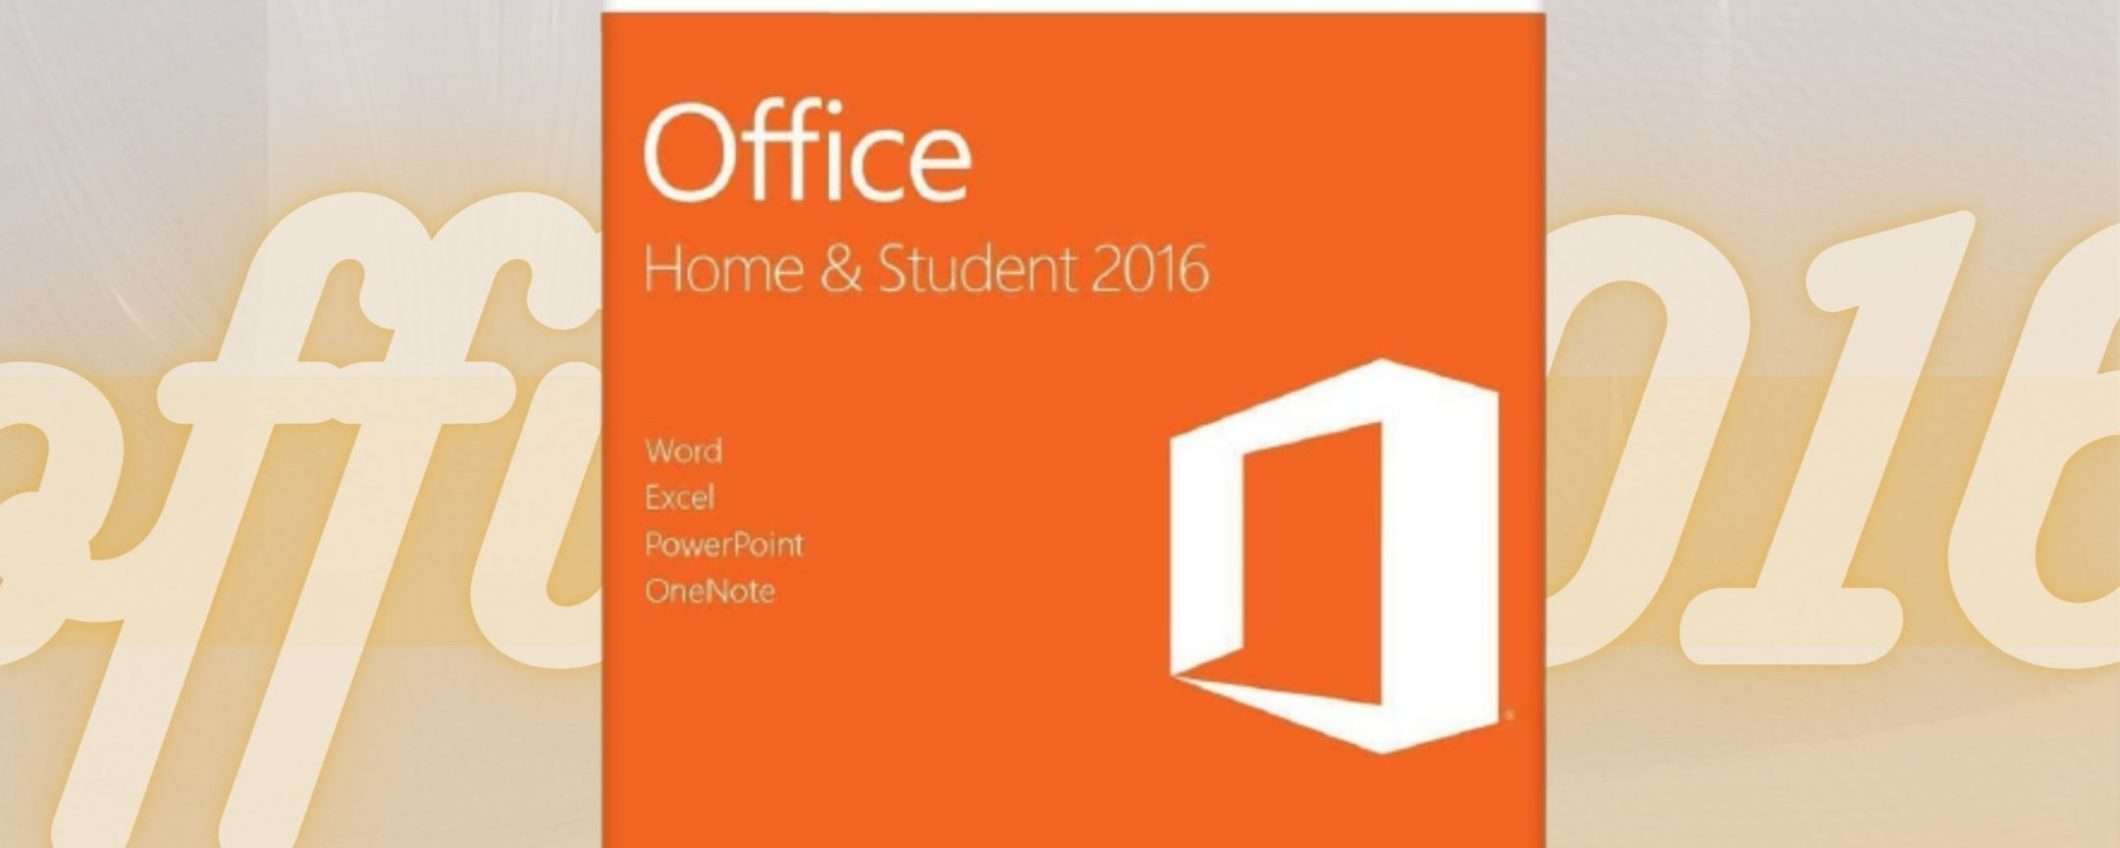 Office 2016: un abbonamento perfetto per gli studenti (-48%)